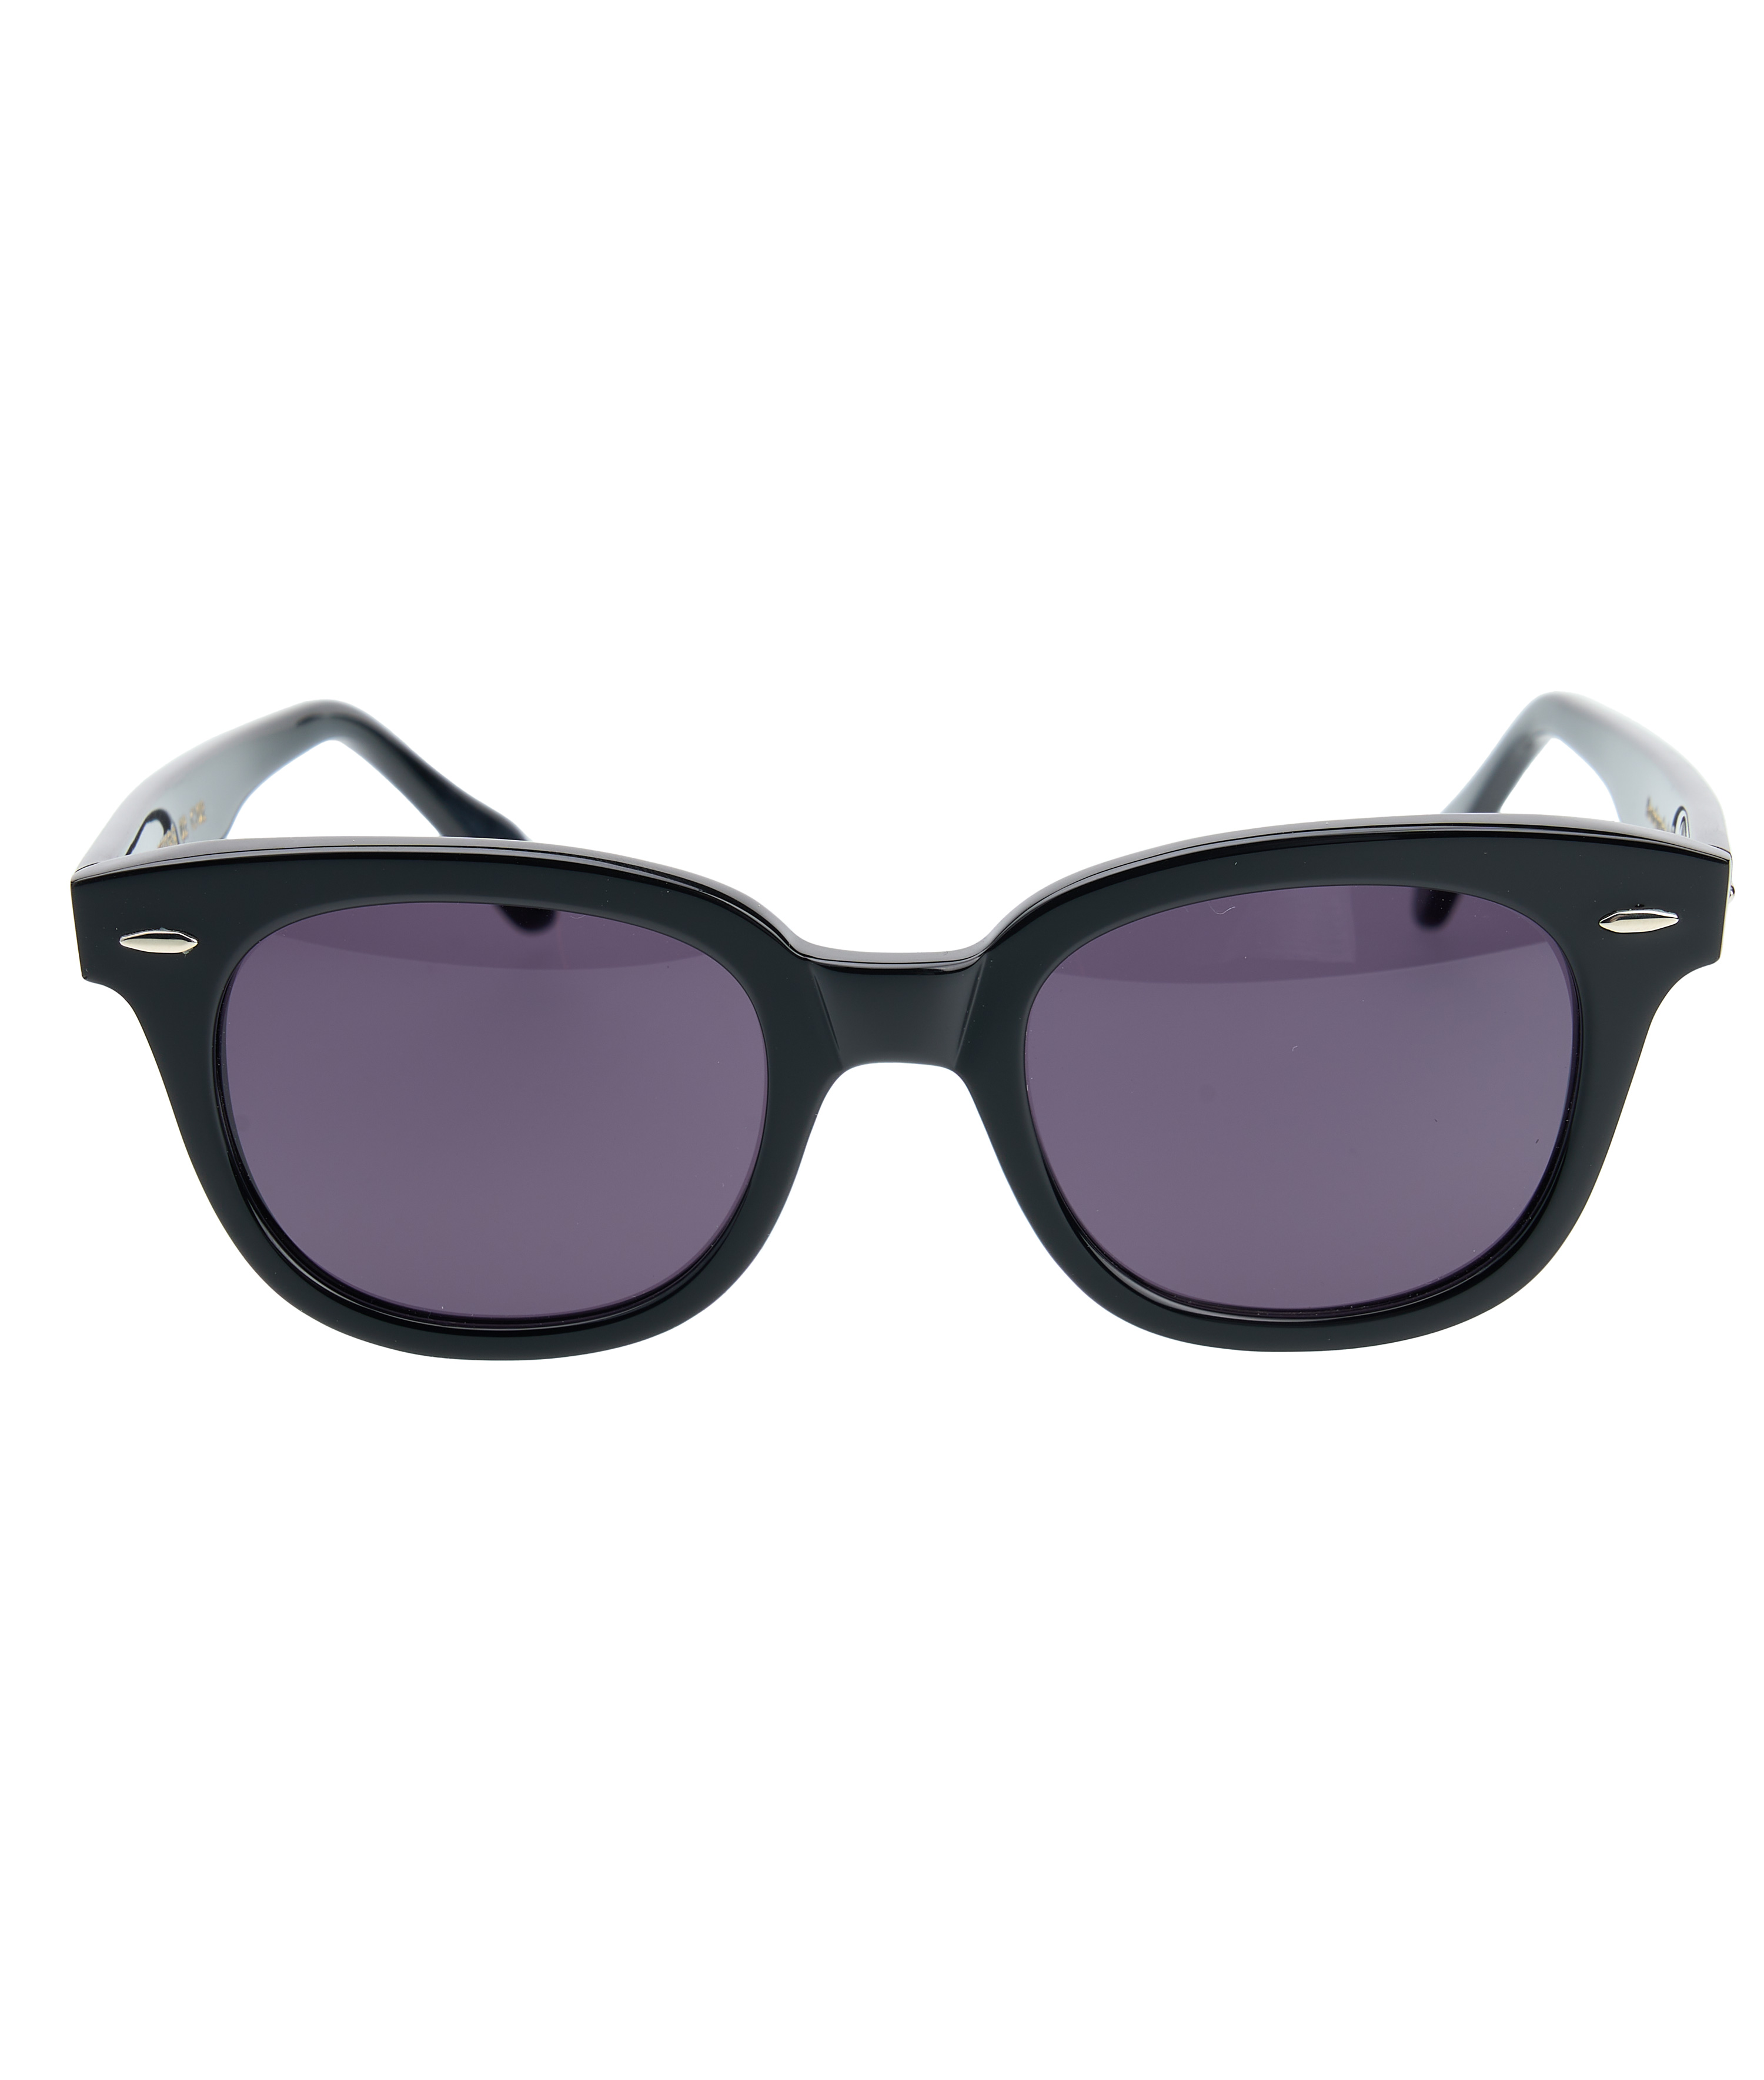 1963 Sun Glasses Elwood black